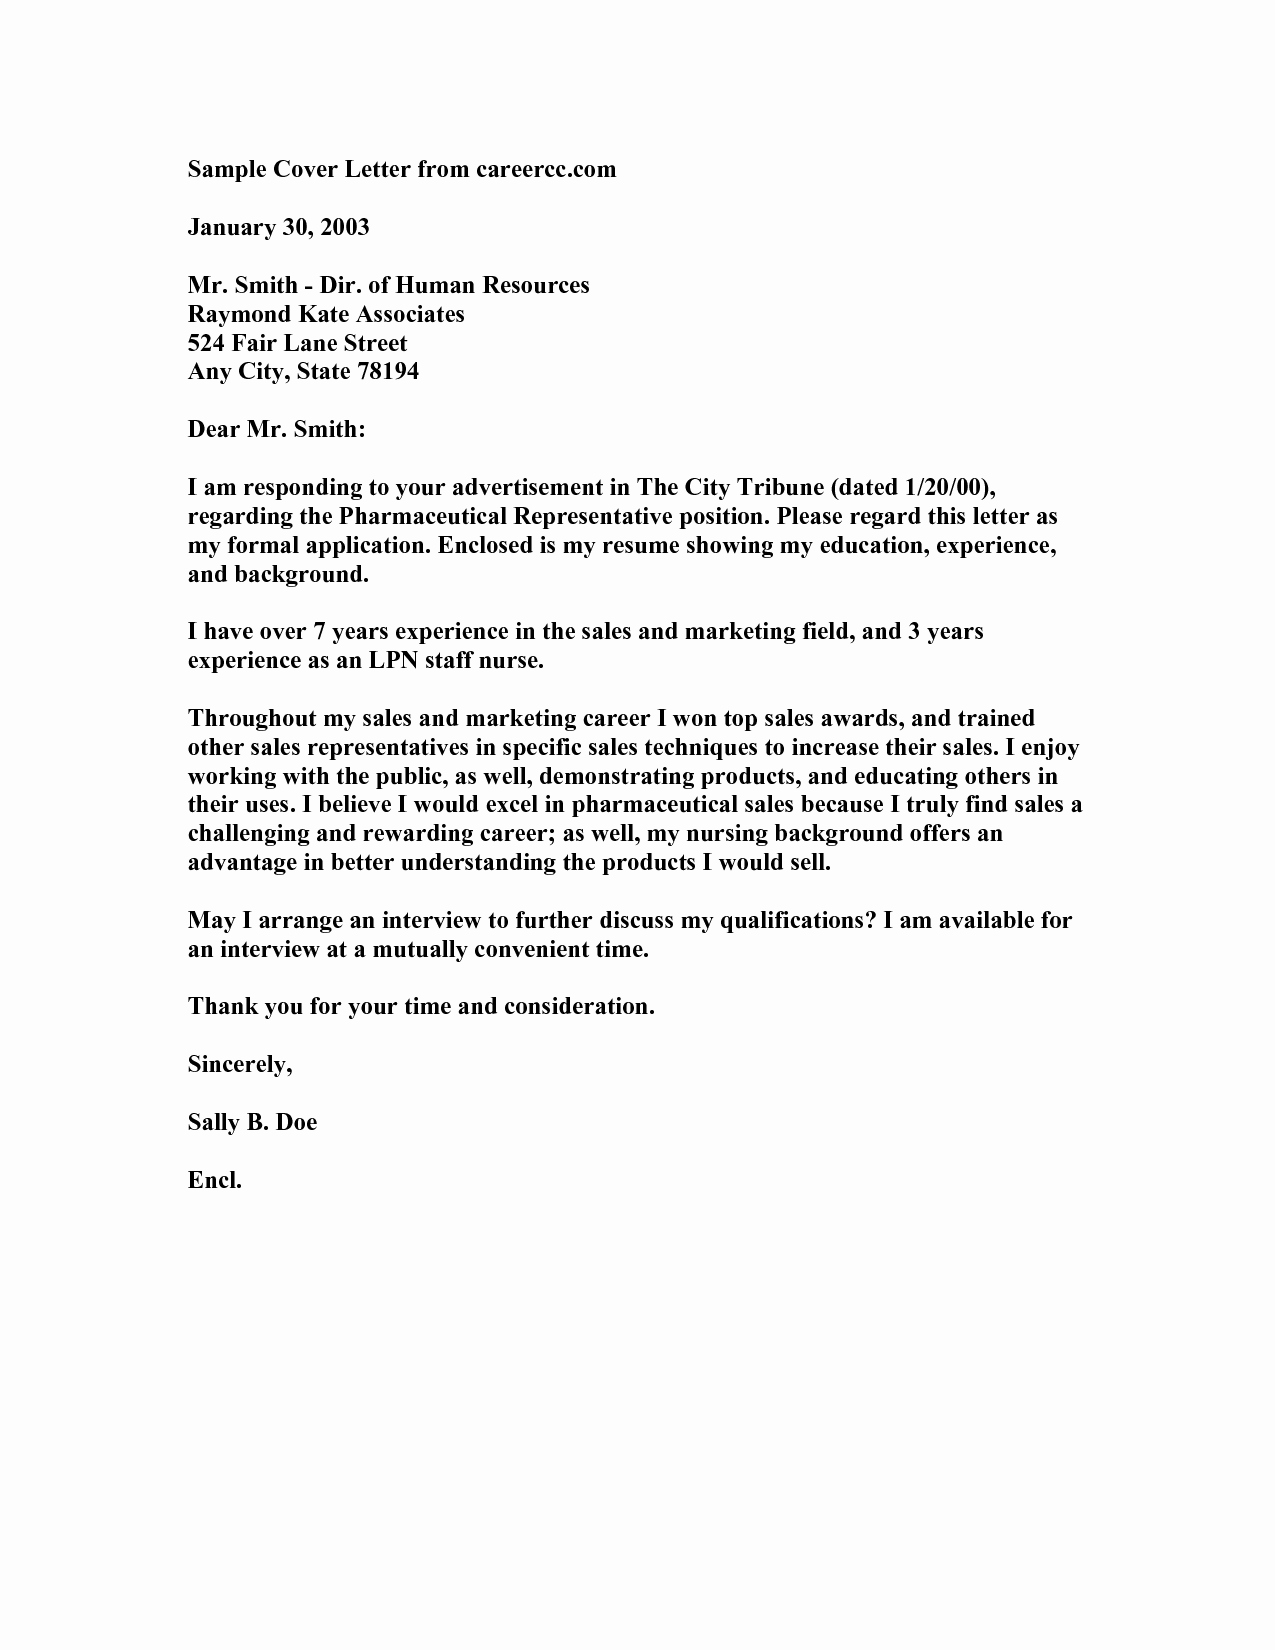 Sample Cover Letter for Nursing Best Of New Grad Nurse Cover Letter Example